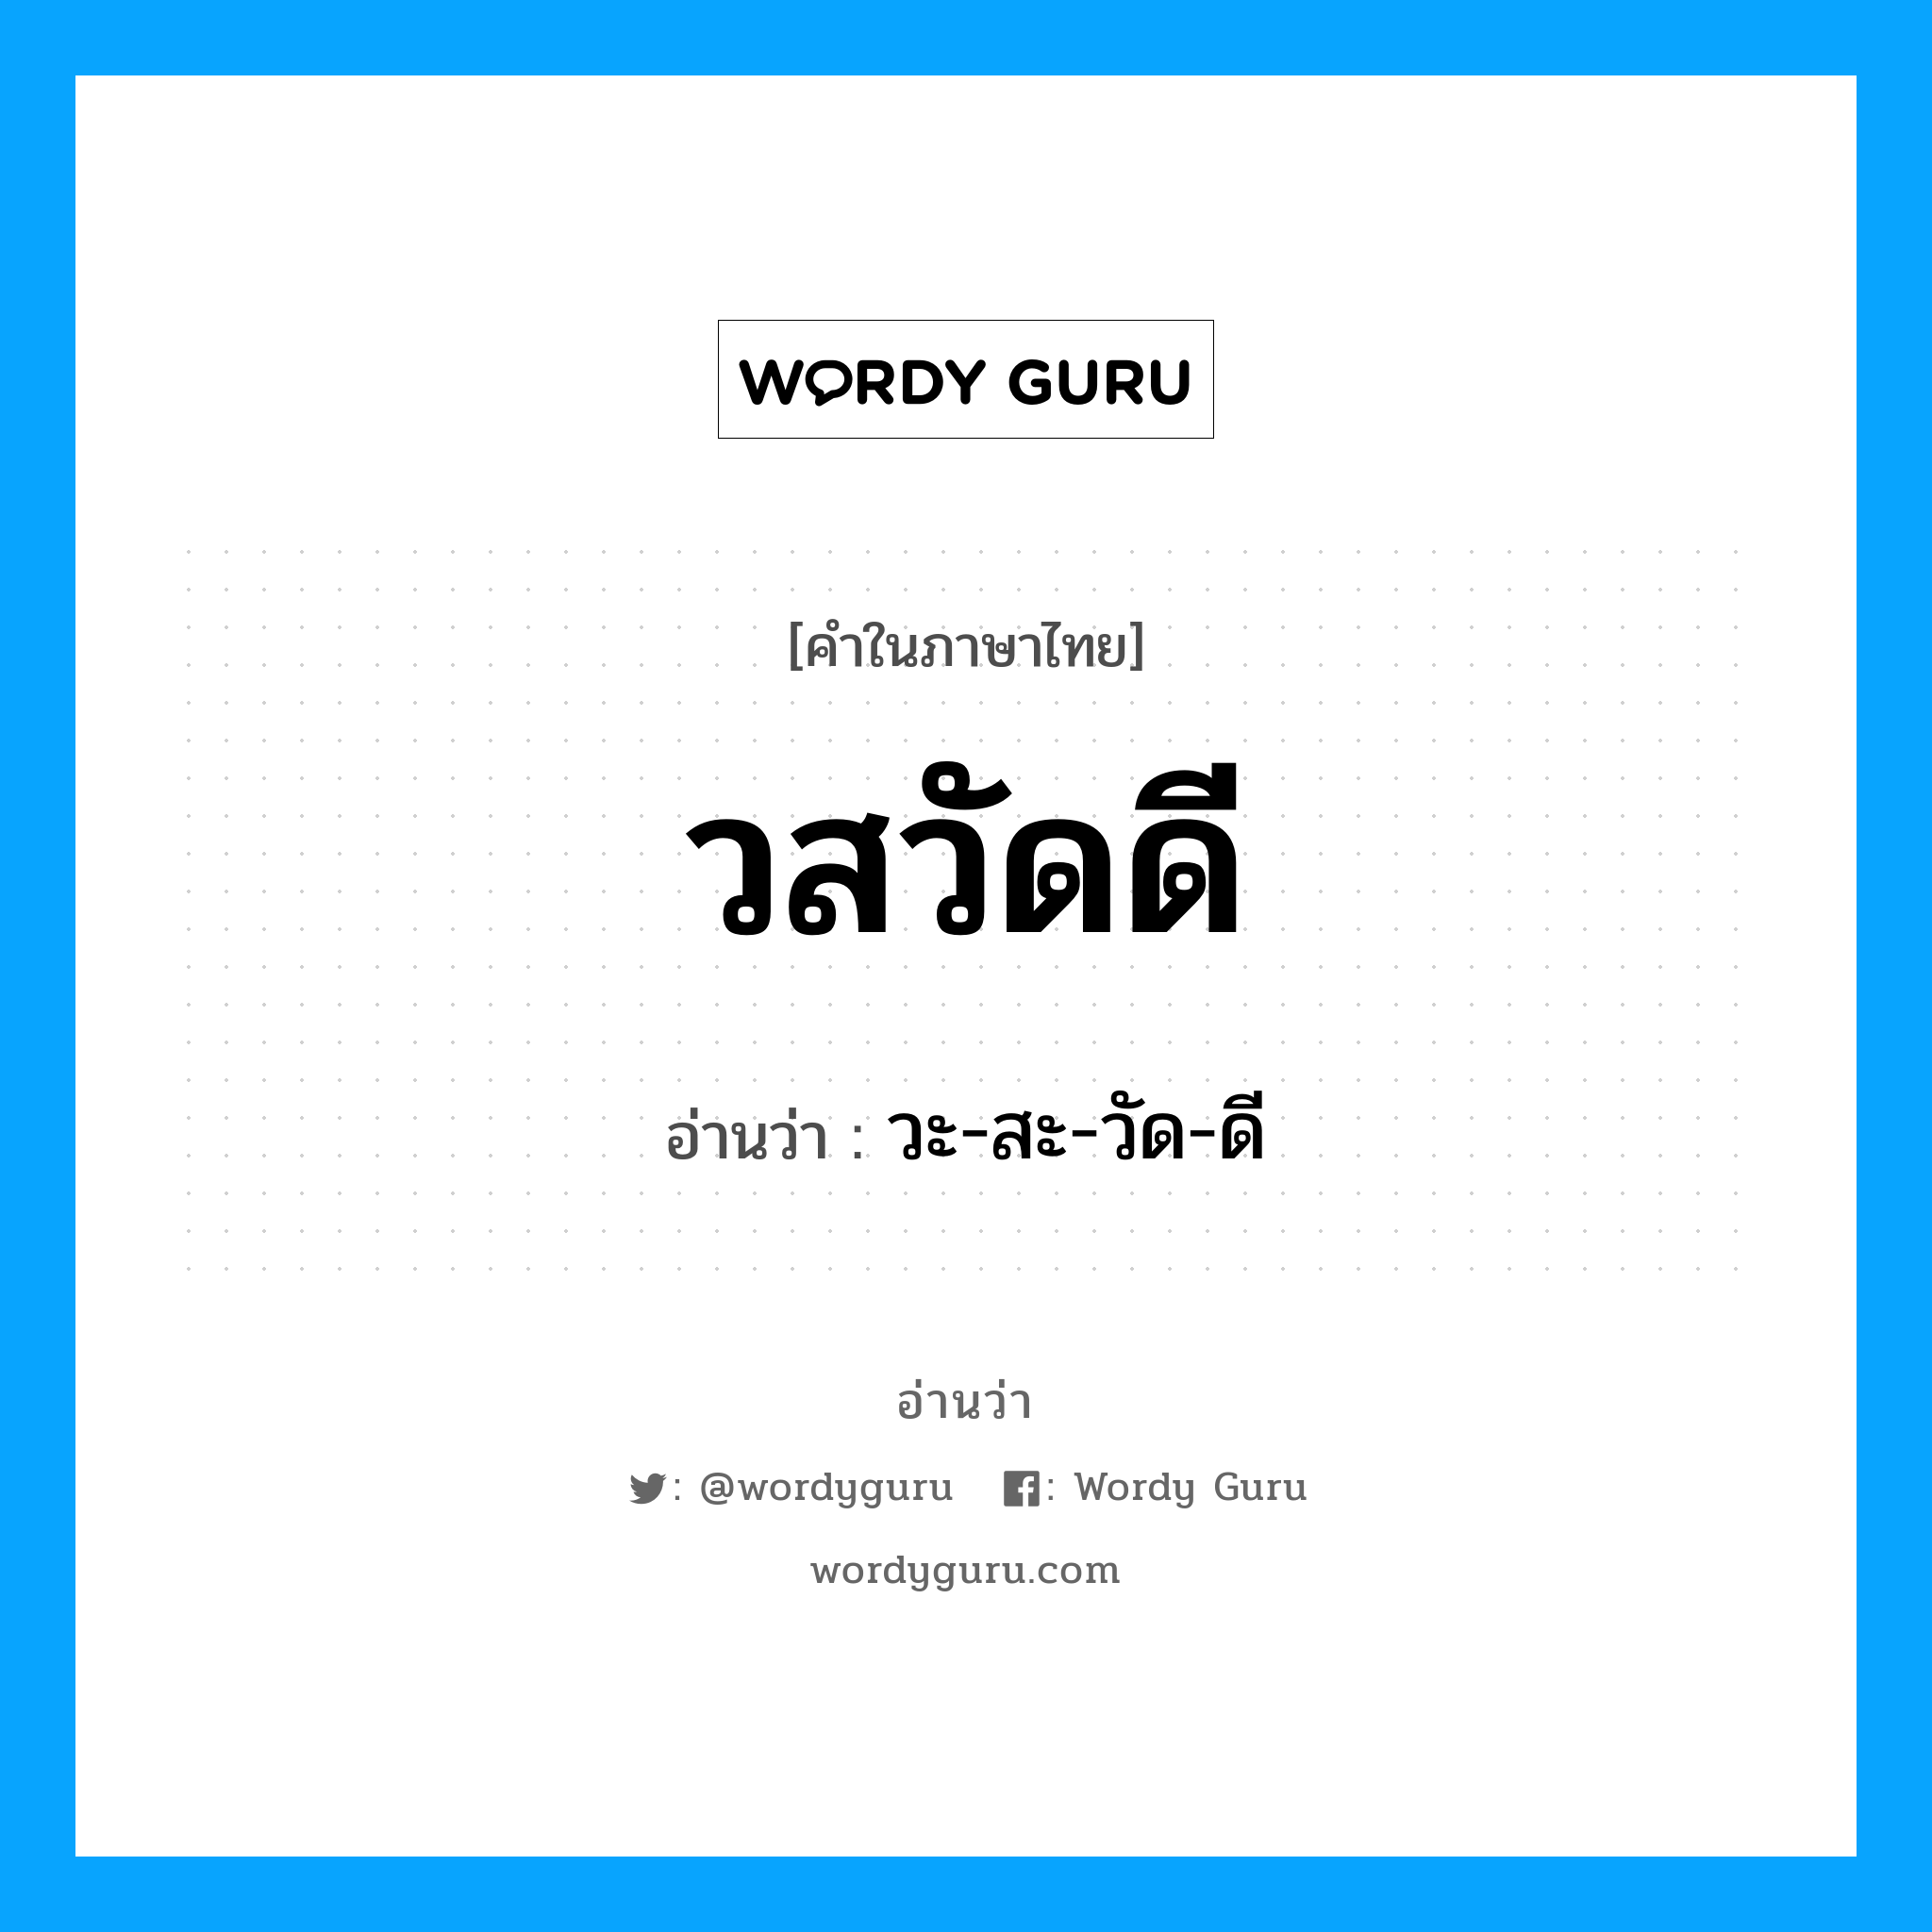 วะ-สะ-วัด-ดี เป็นคำอ่านของคำไหน?, คำในภาษาไทย วะ-สะ-วัด-ดี อ่านว่า วสวัดดี